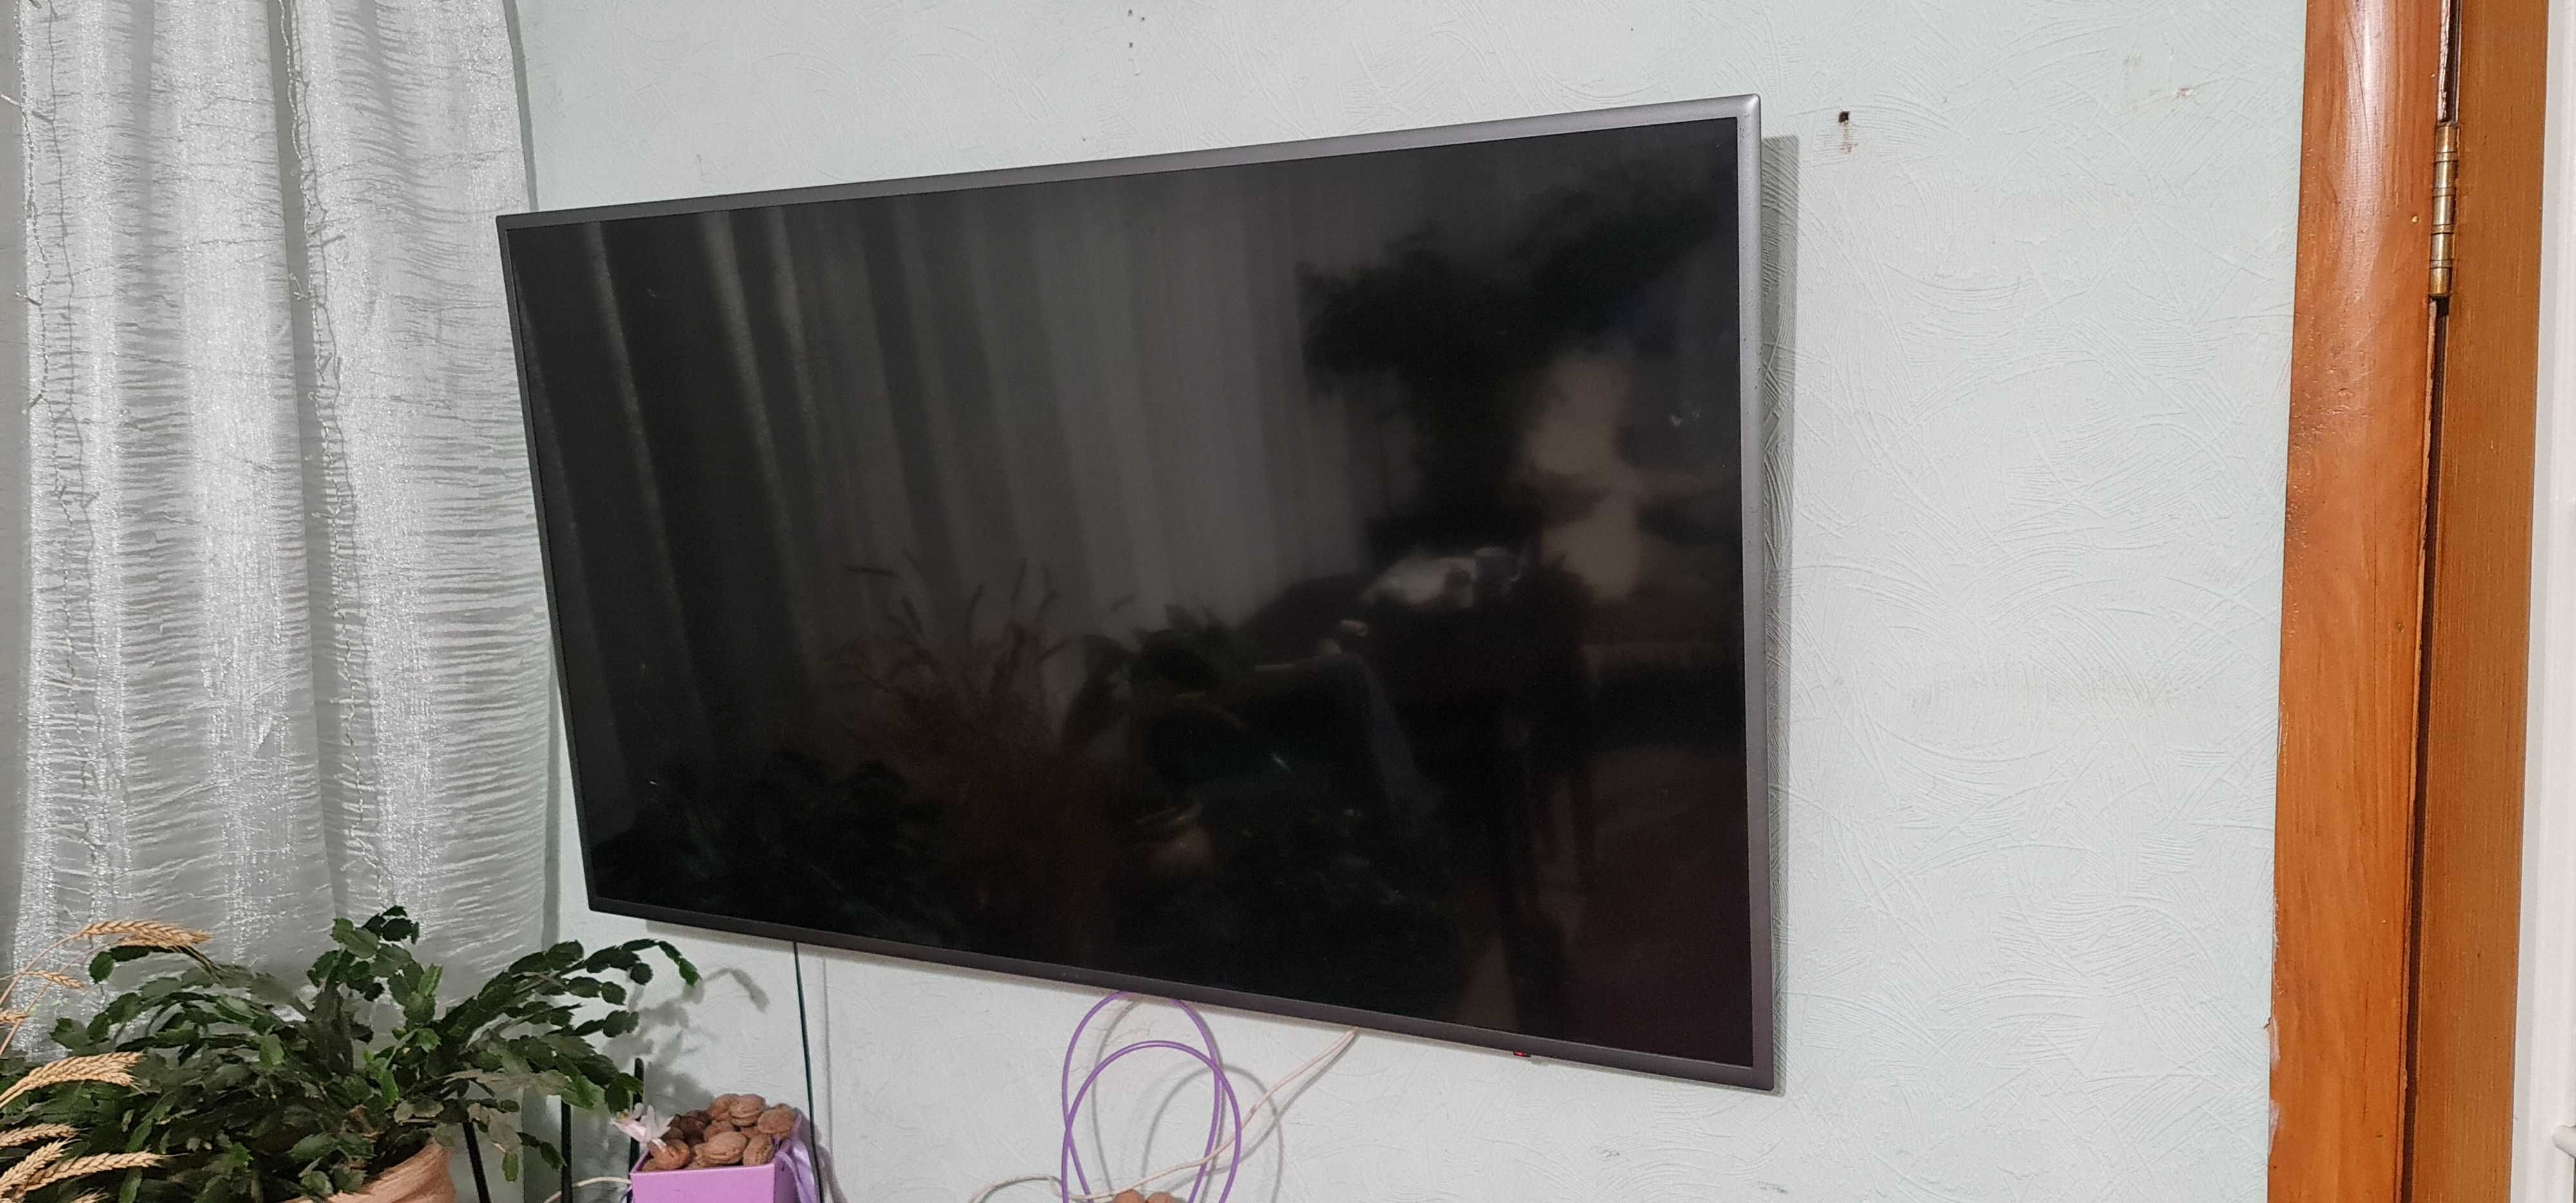 Продам телевизор Самсунг UE55K5500 под  разборку или восстановление.